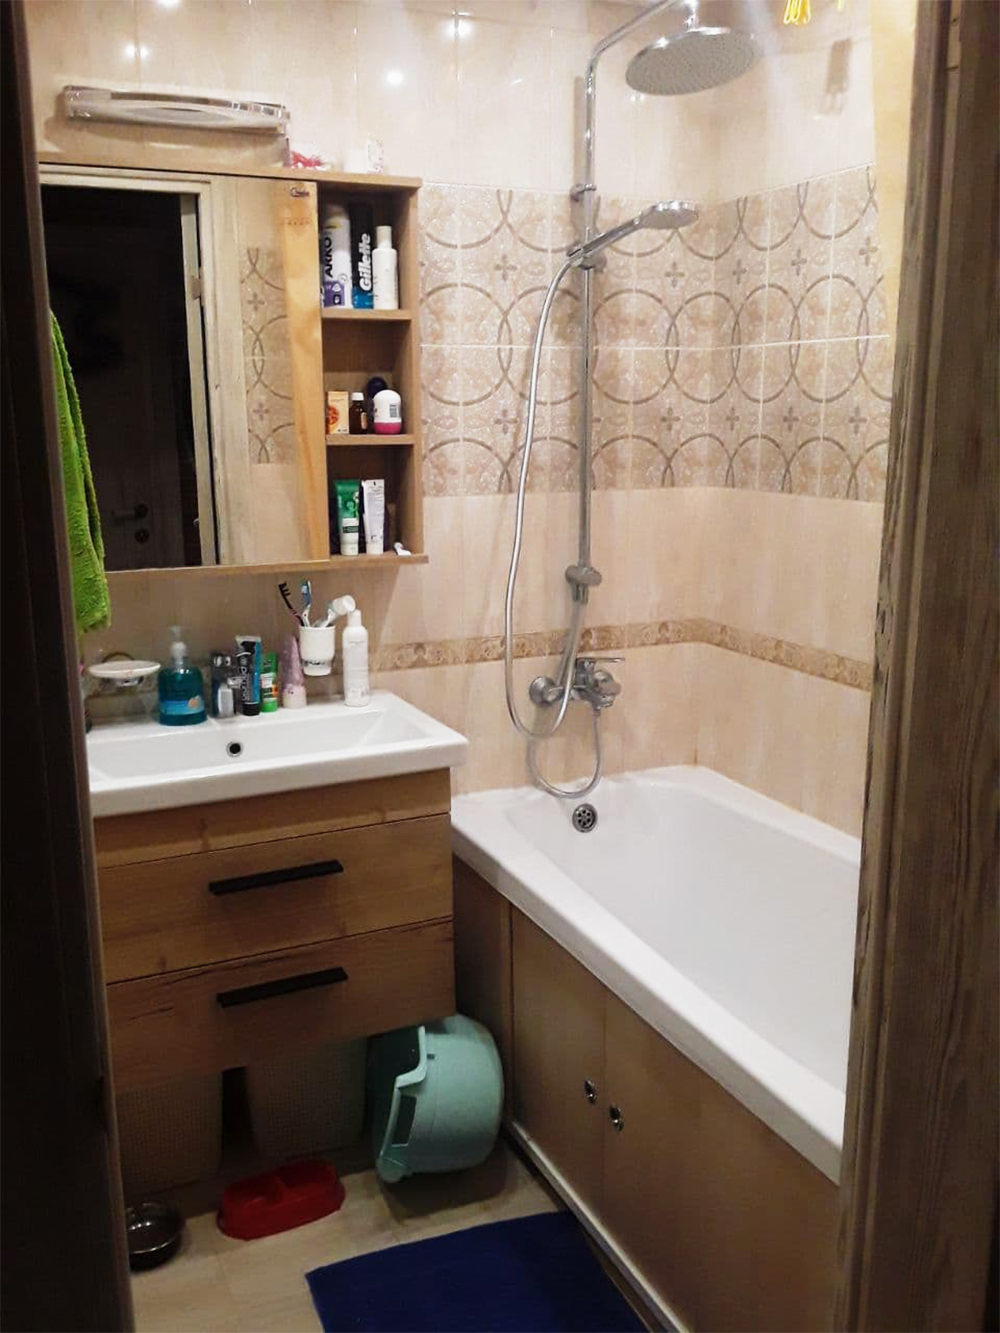 Так выглядит отделка в ванной